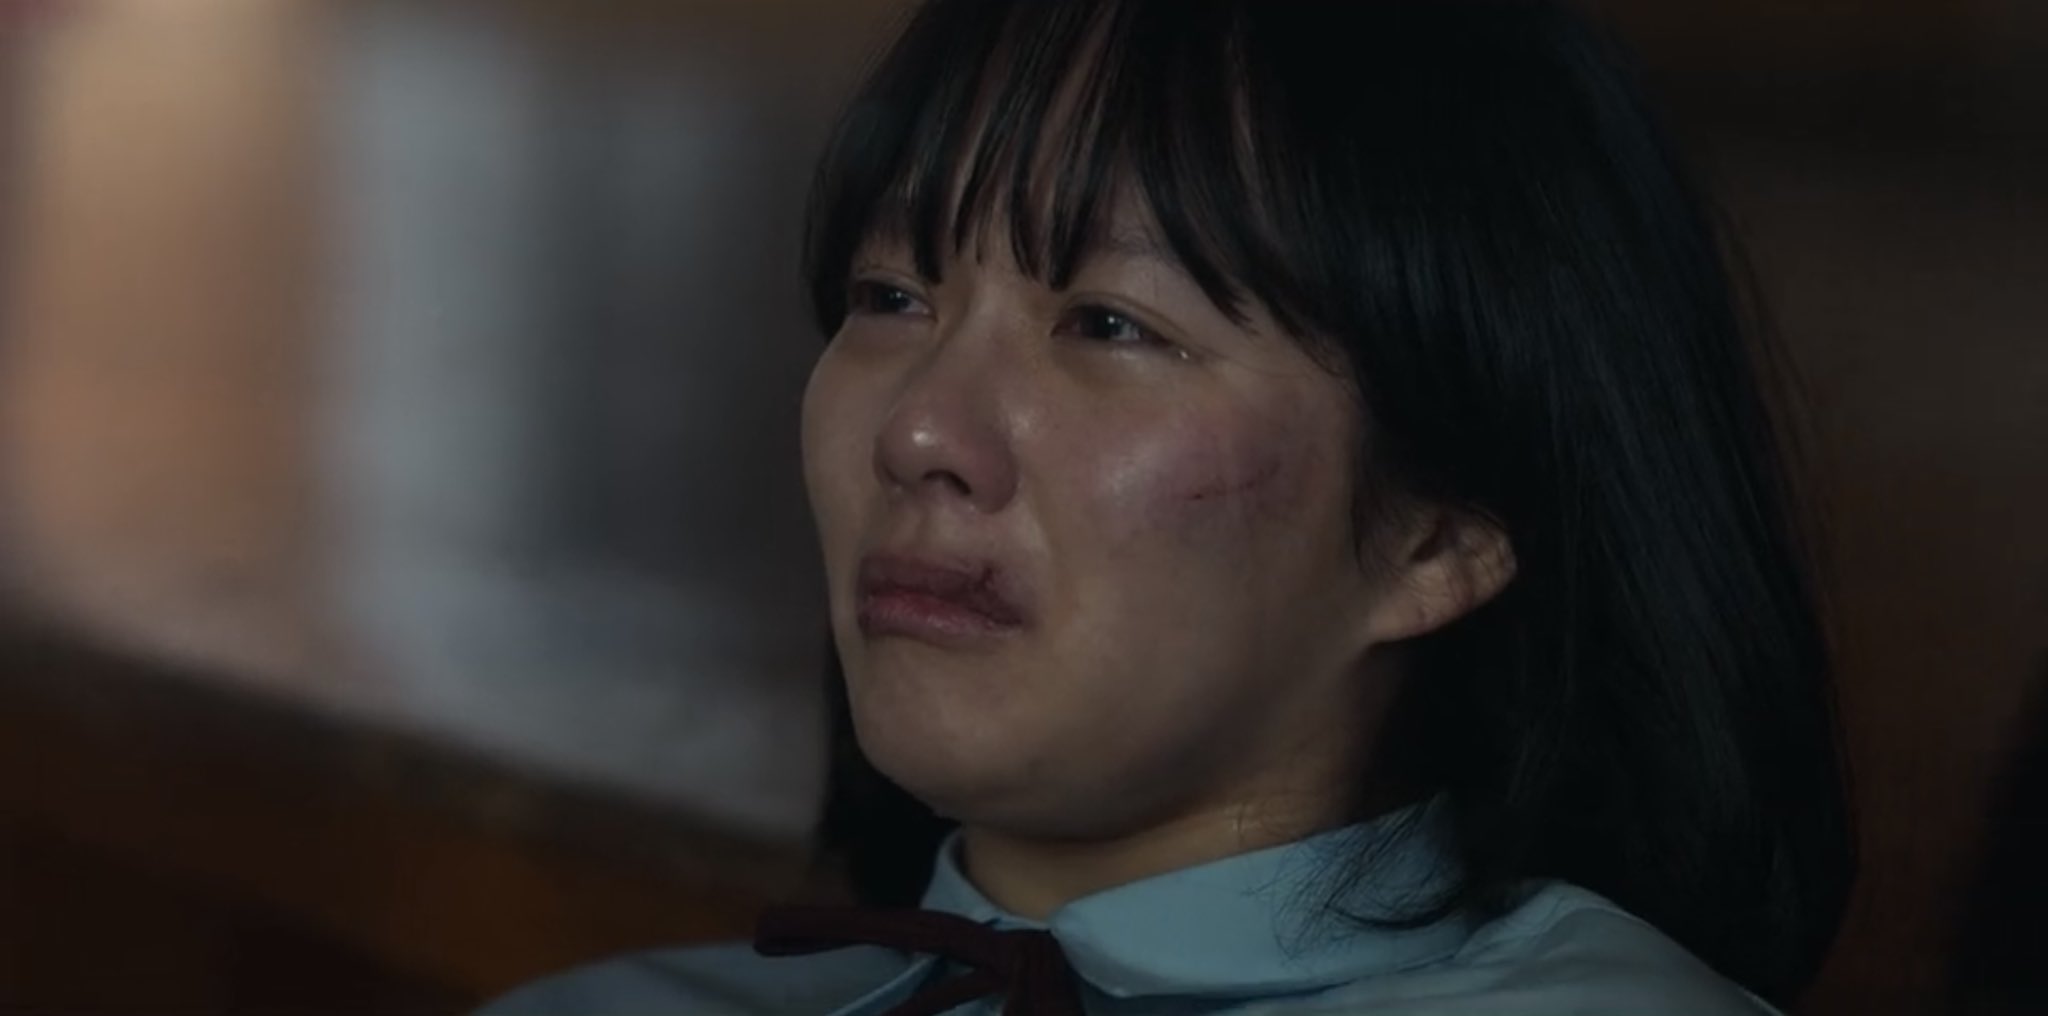 Sự kiện bạo lực học đường chấn động Hàn Quốc được đưa vào phim 18+ của Song Hye Kyo - 3